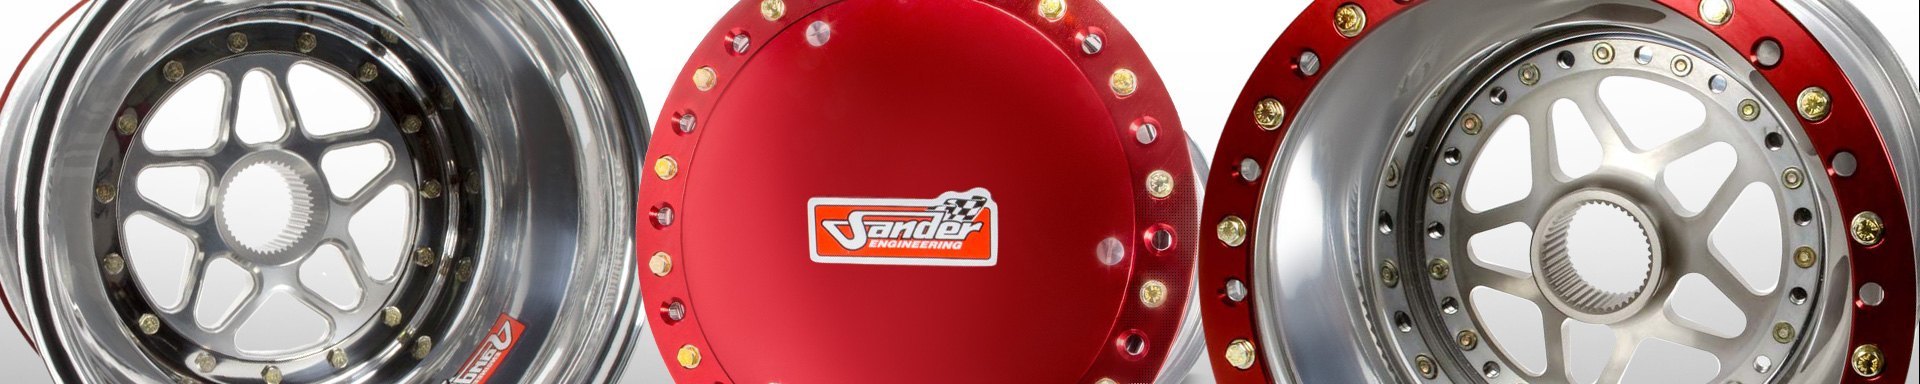 Sander Engineering Racing Gear